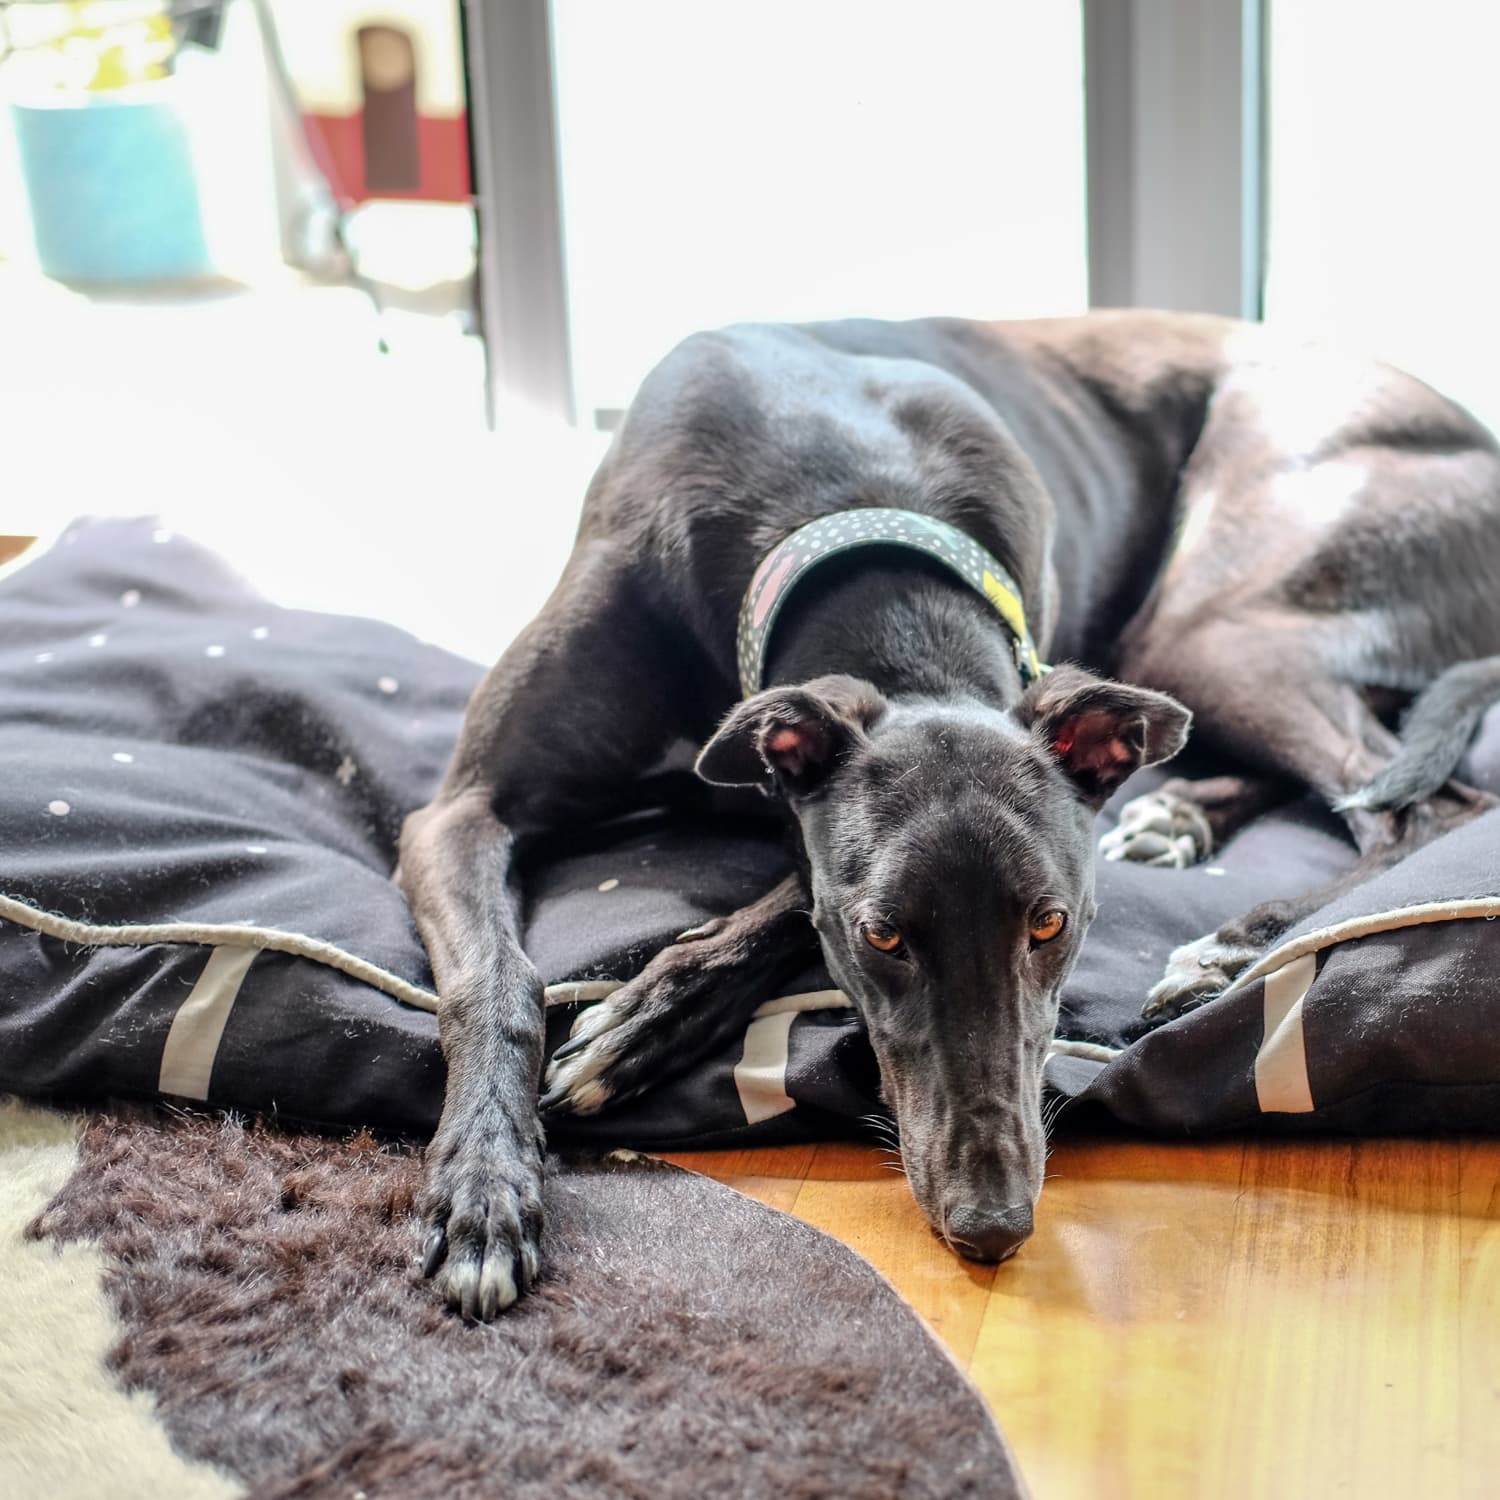 Home - Greyhound Friends for Life - Rescue • Adoption • Advocacy